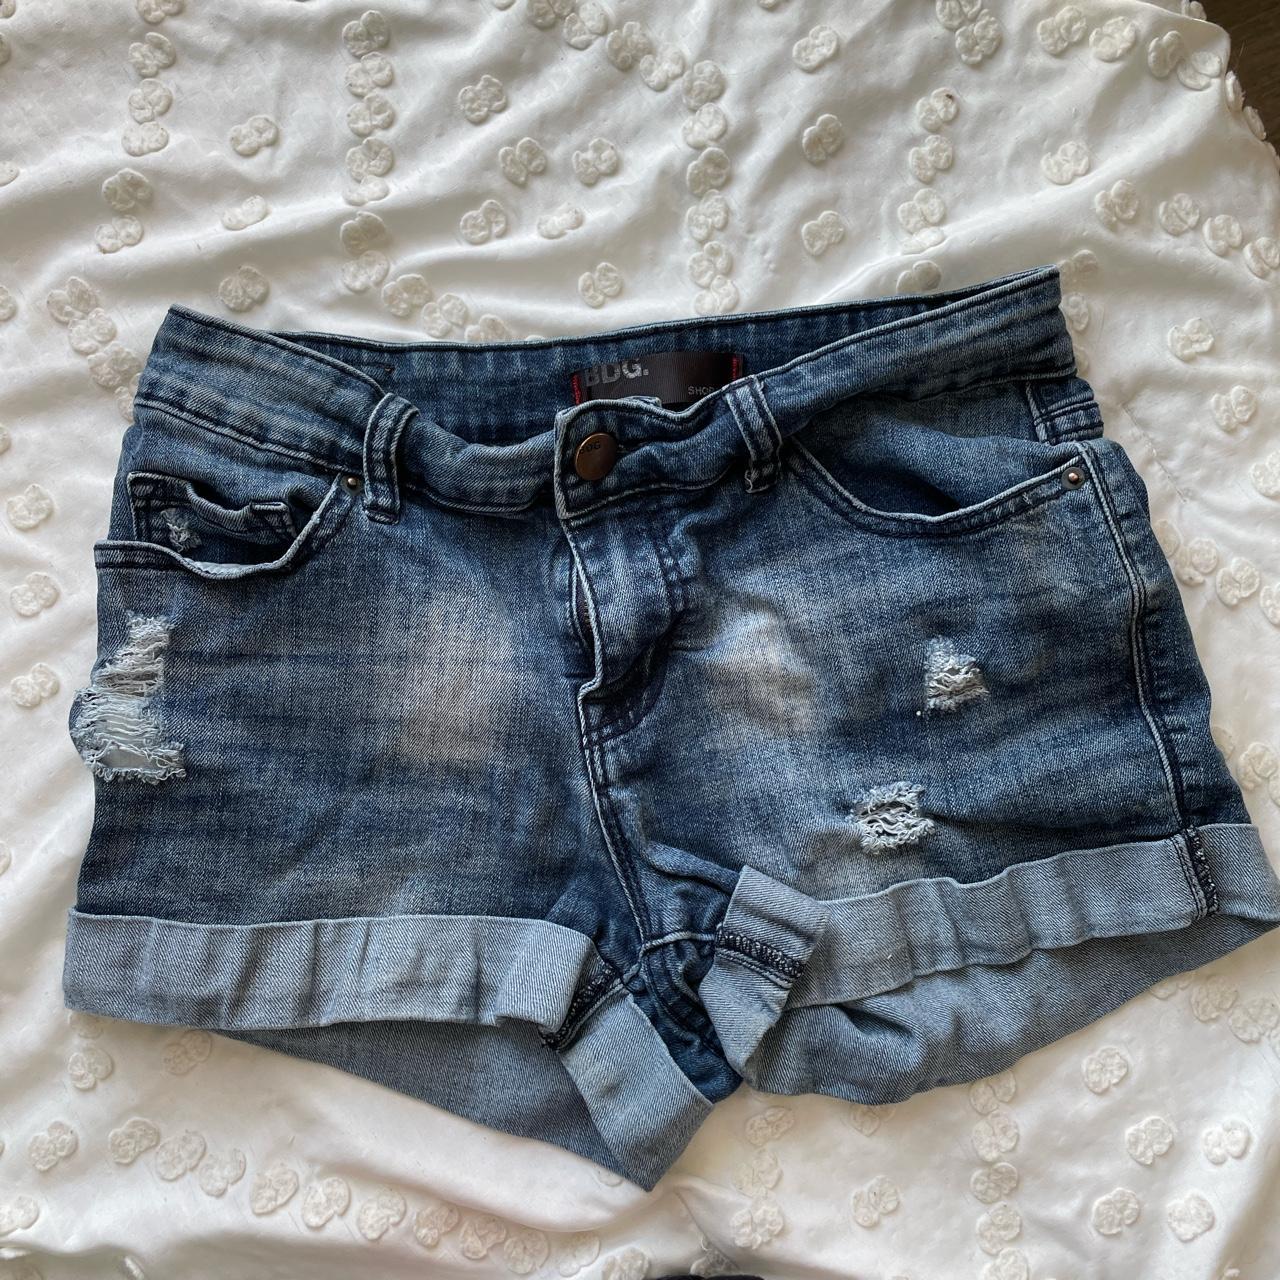 urban outfitters bdg jean shorts denim dark wash - Depop